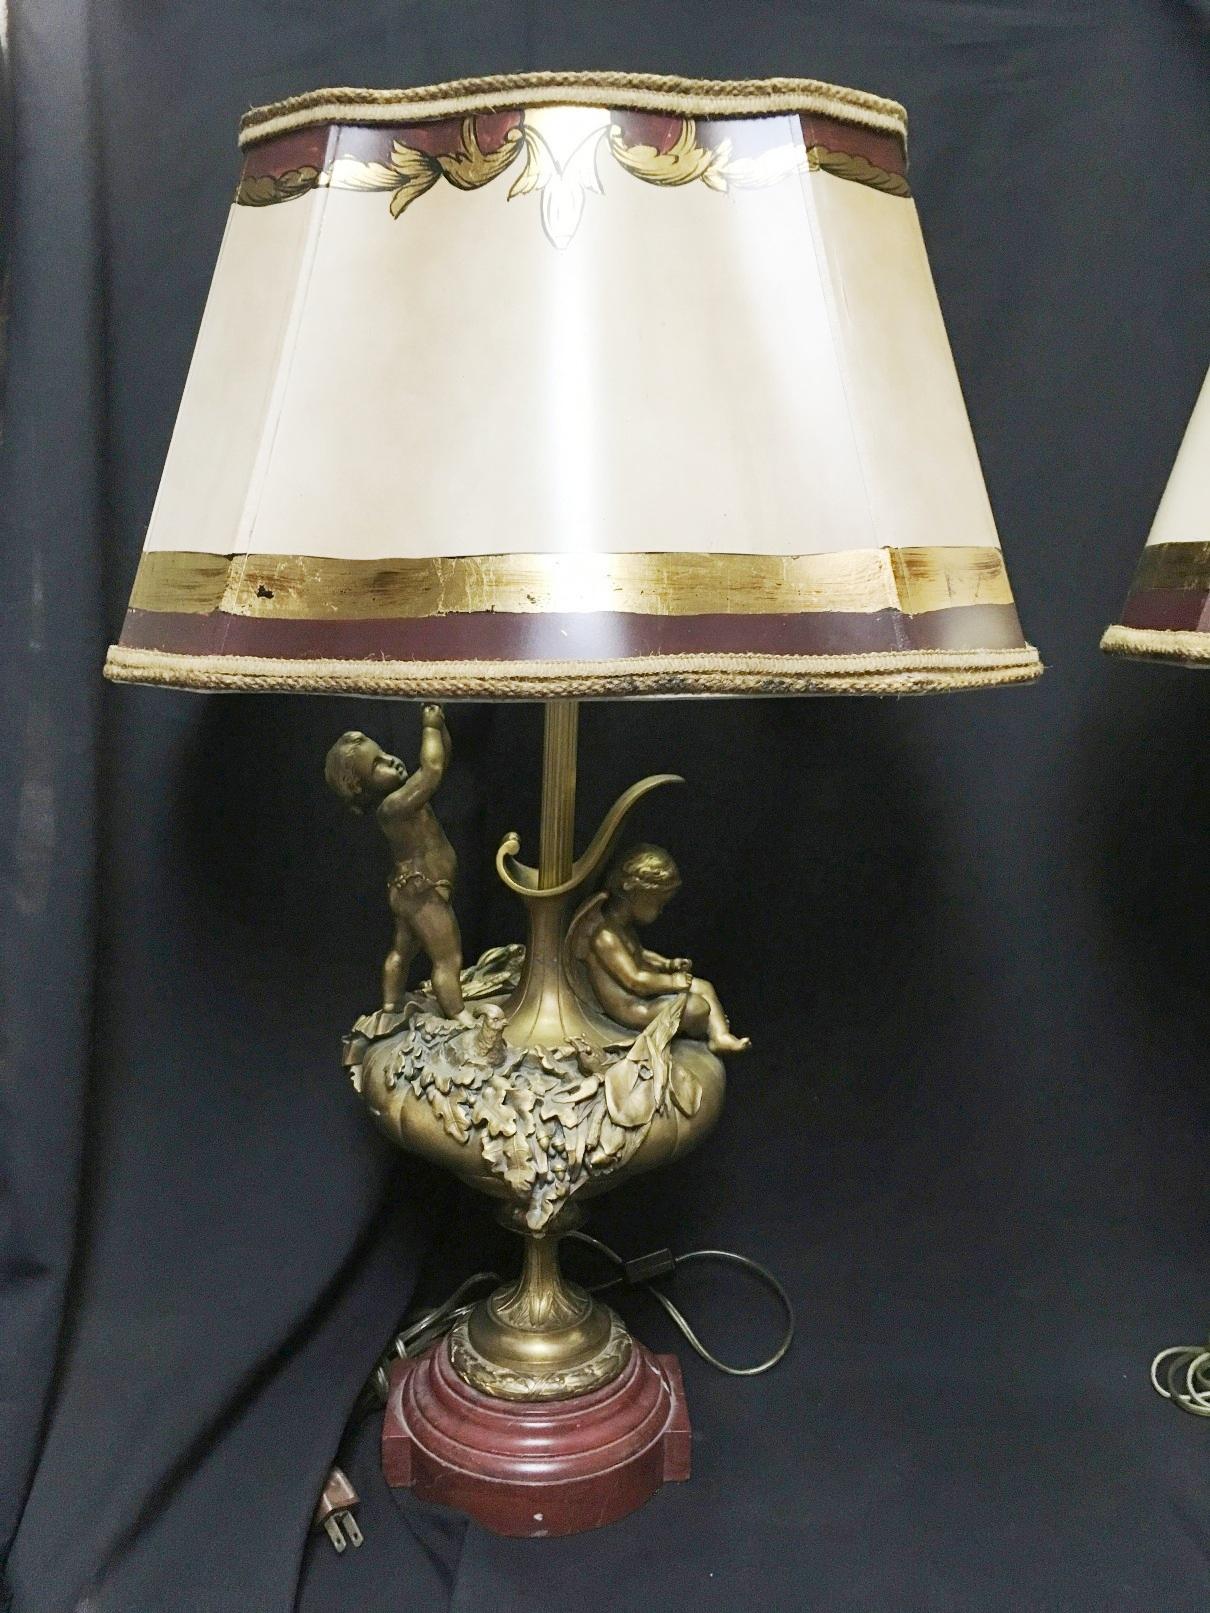 Hervorragendes Paar gegensätzlicher französischer Ormolu-Lampen im Louis-XVI-Stil des 19. Jahrhunderts mit Sockeln aus Rouge-Marmor.
Mit paketvergoldetem und bemaltem Pergamentimitatschirm.

Jede Ormolu-Lampe stellt einen sitzenden Amor und einen